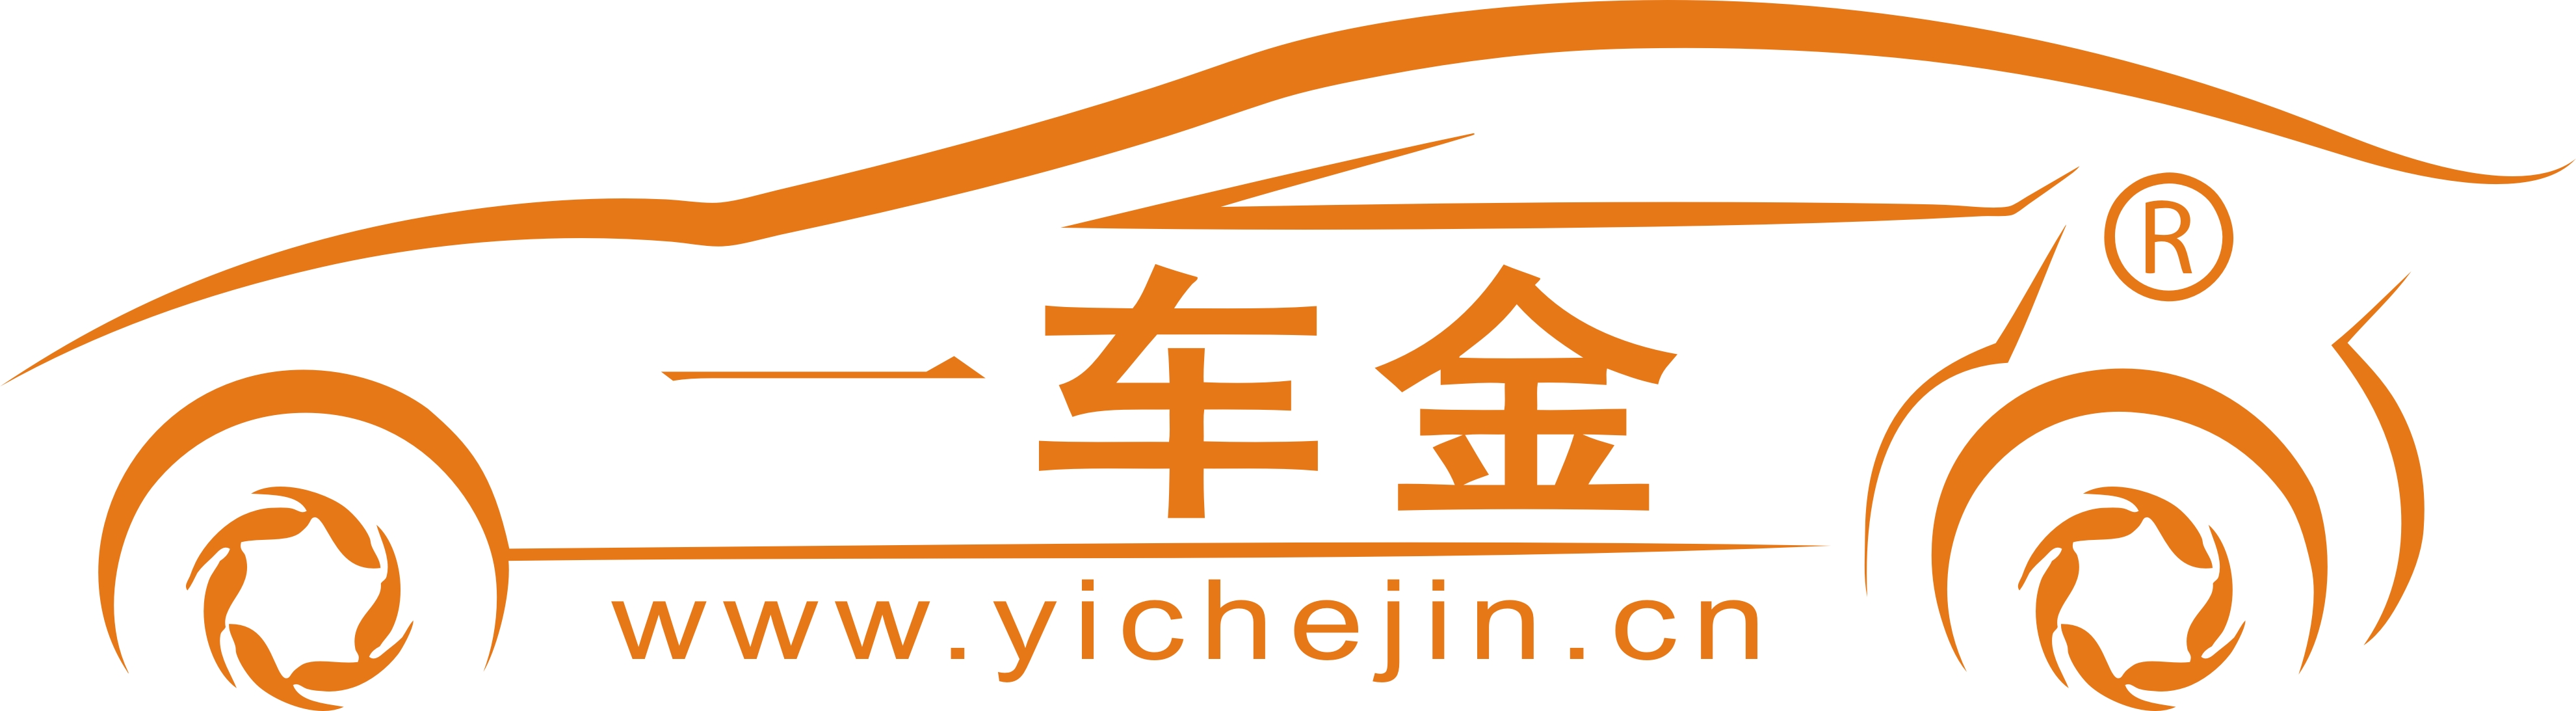 yichejin